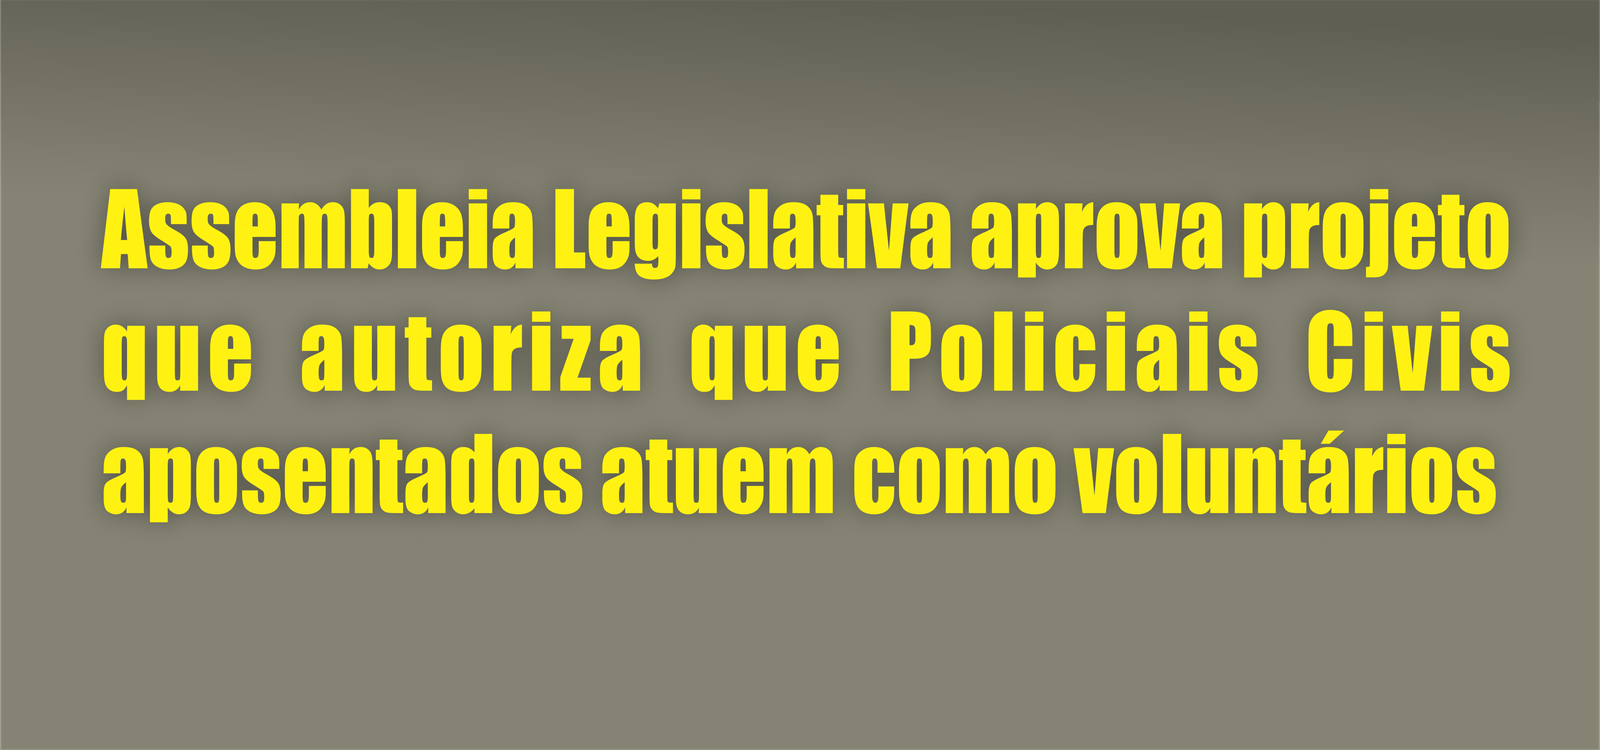 Assembleia Legislativa aprova projeto que autoriza que Policiais Civis aposentados atuem como voluntários